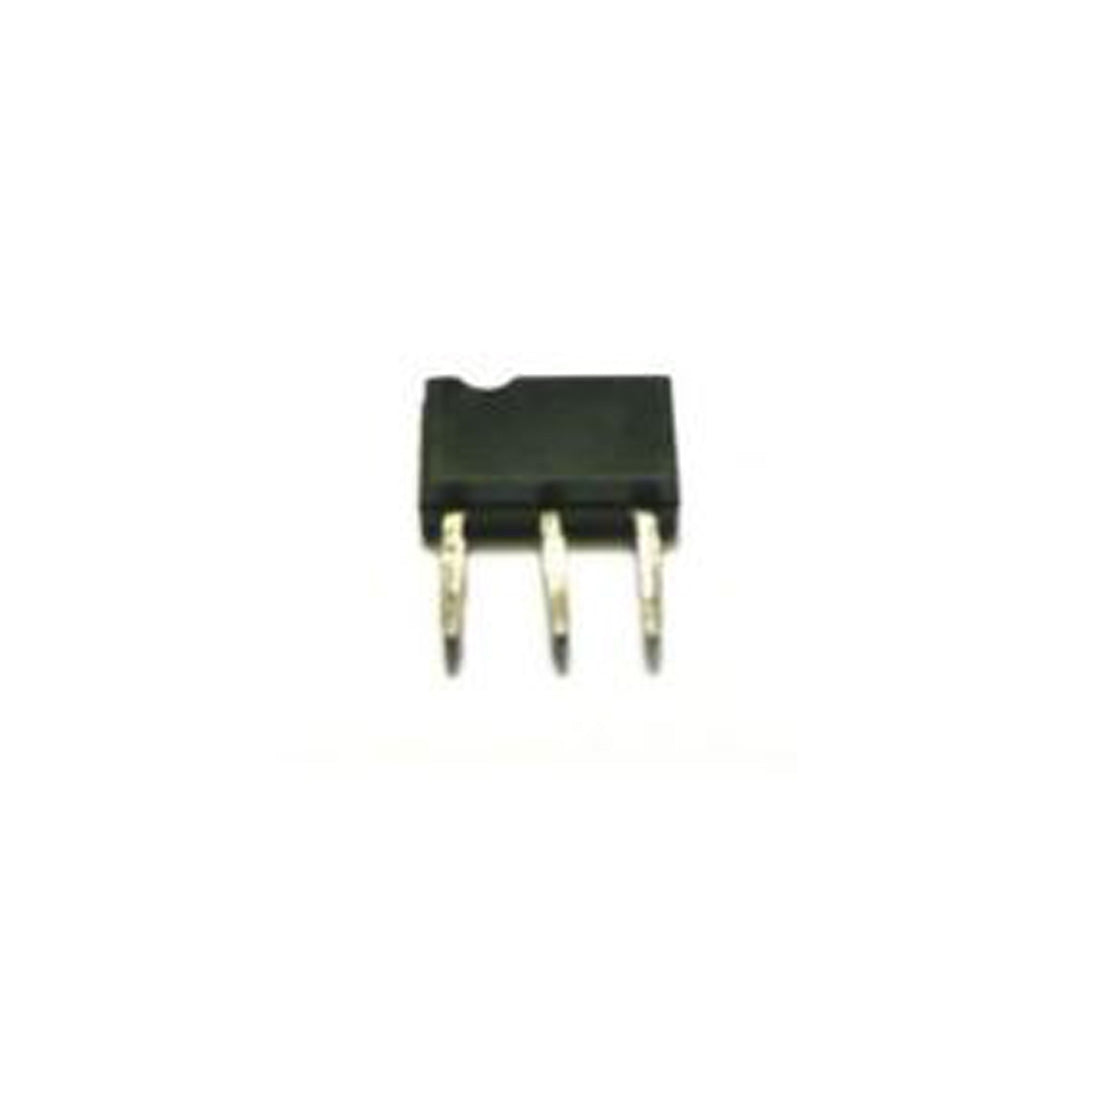 MITSUBISHI 2SD1350 Componente elettronico, circuito integrato, transistor, 3 contatti